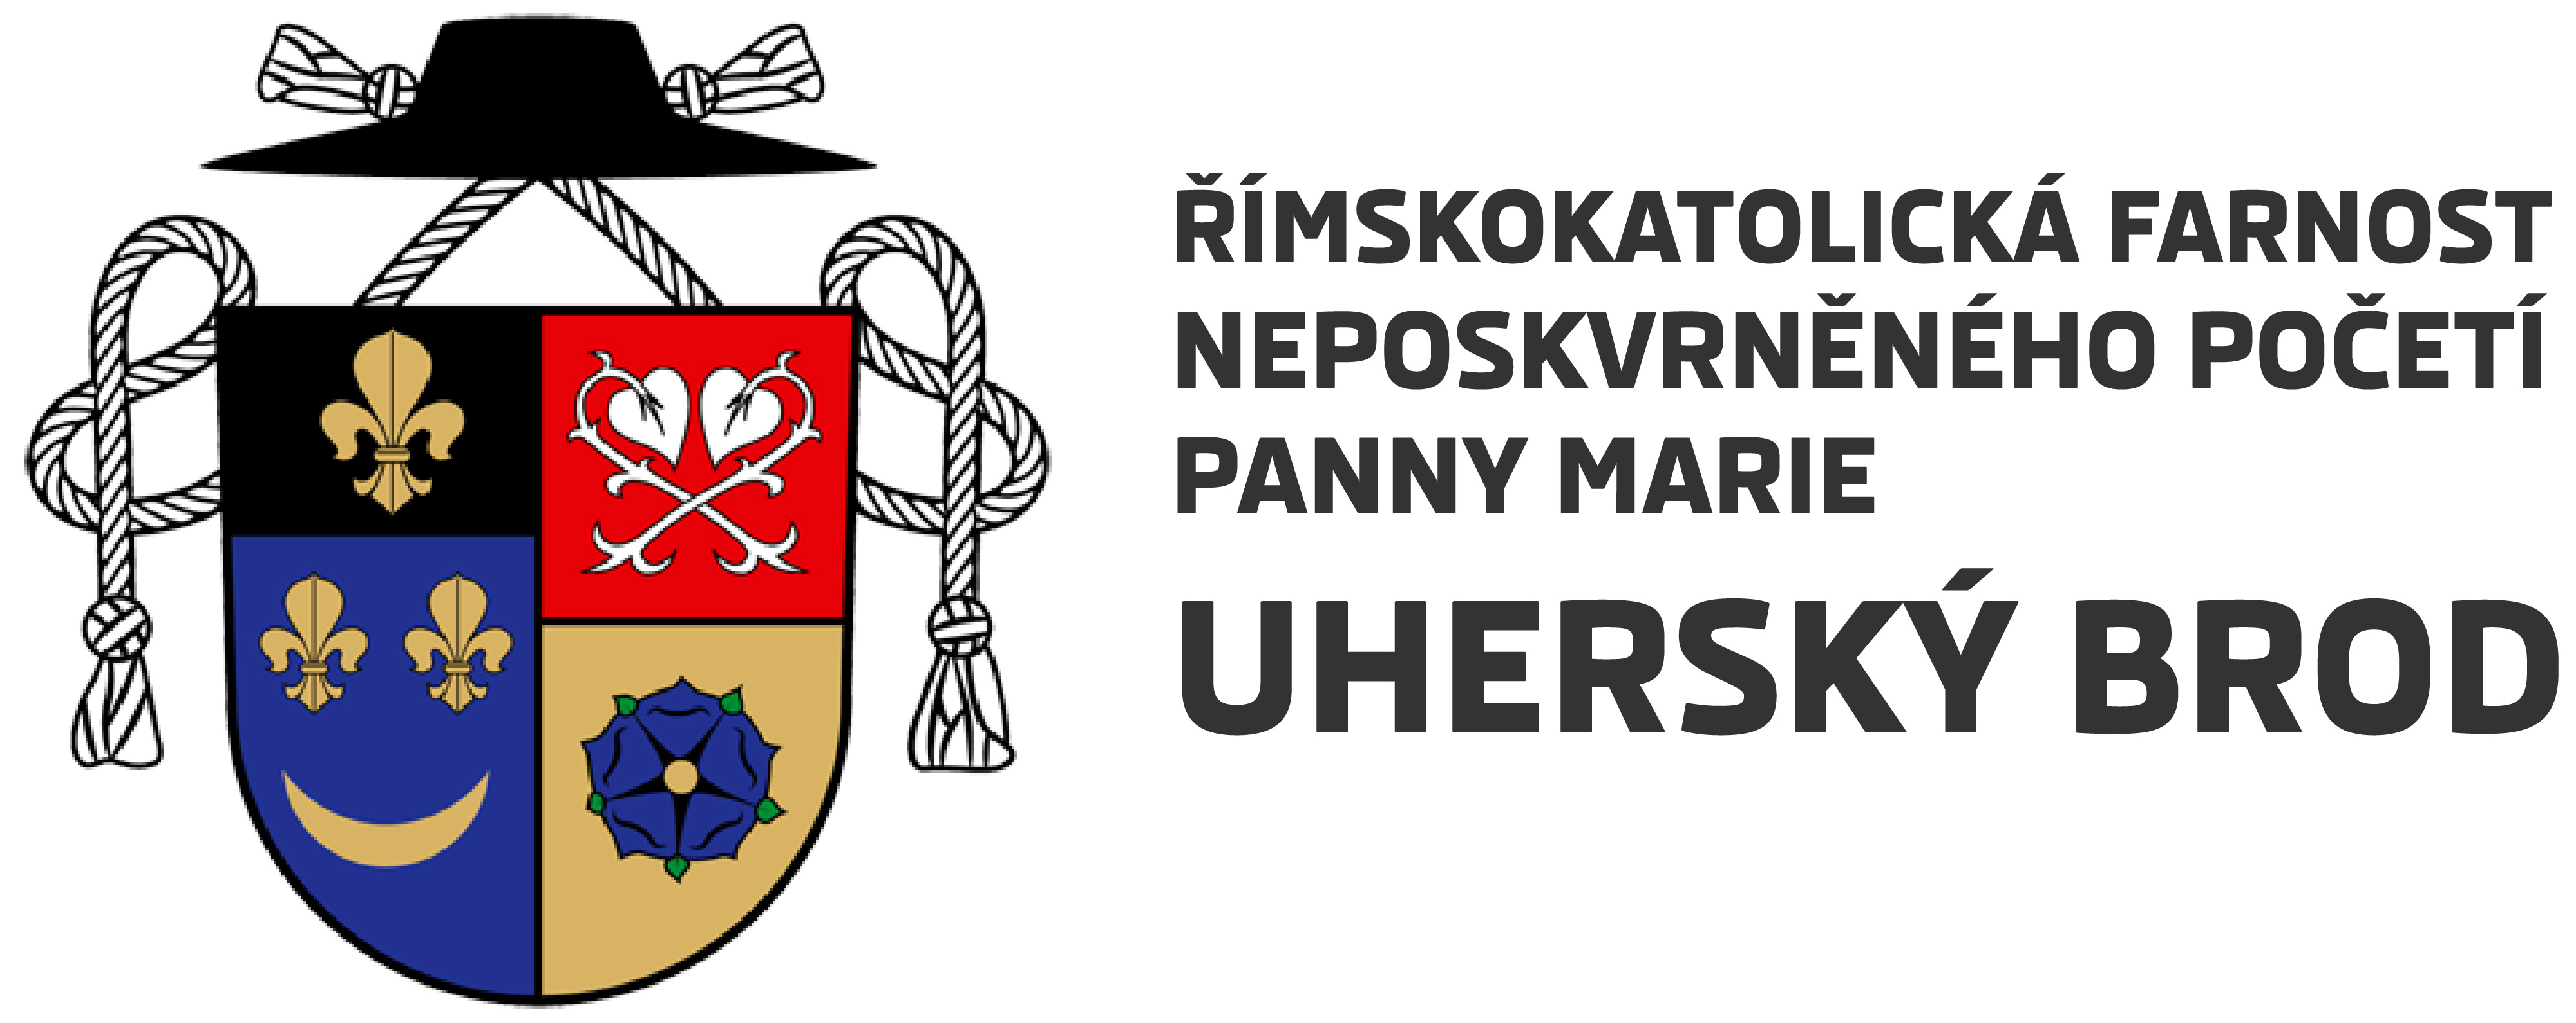 Logo Dějiny farnosti - Římskokatolická farnost Uherský Brod